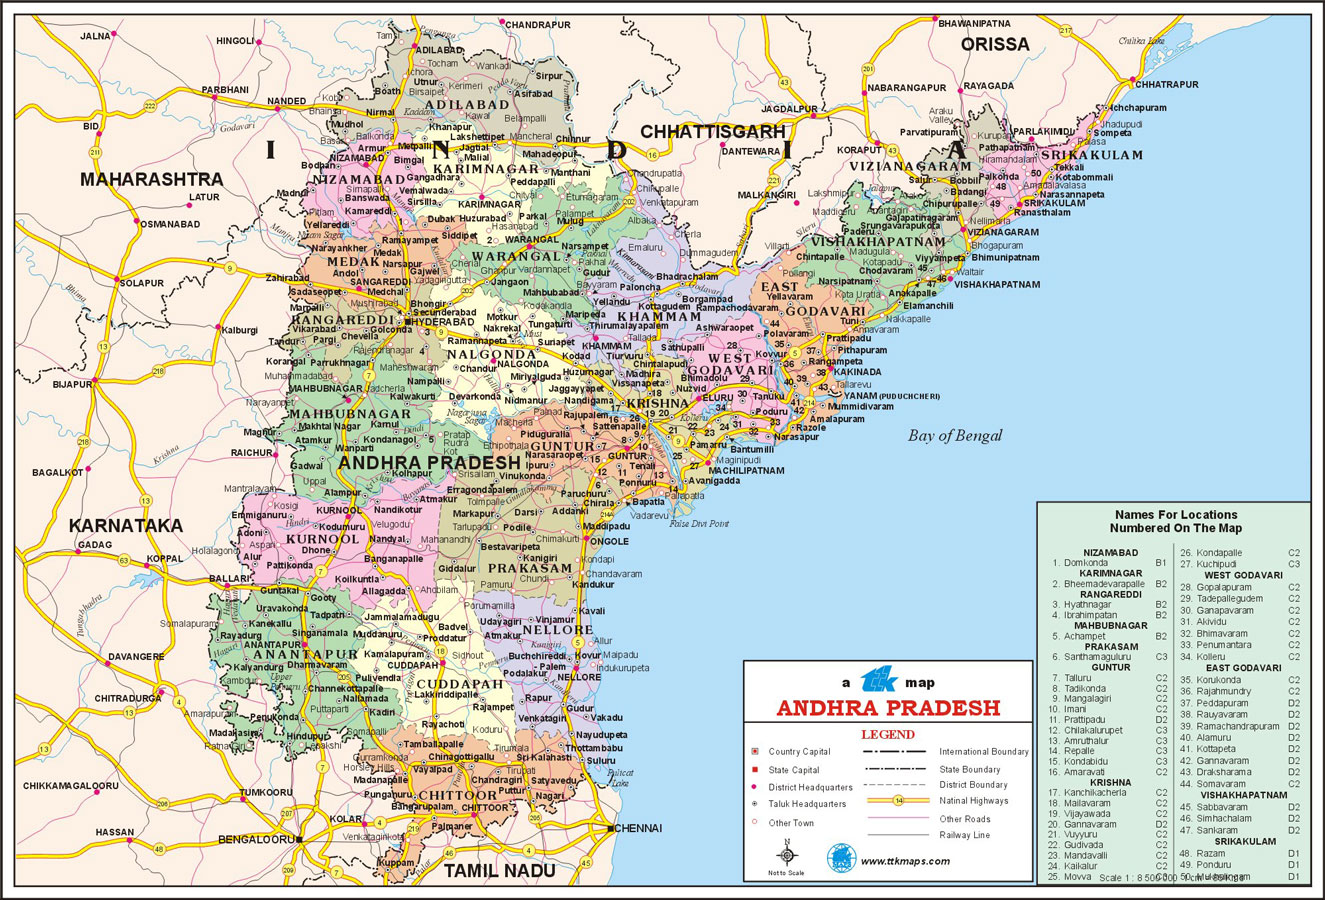 Vishakhapatnam Andhra Pradesh voyager plan